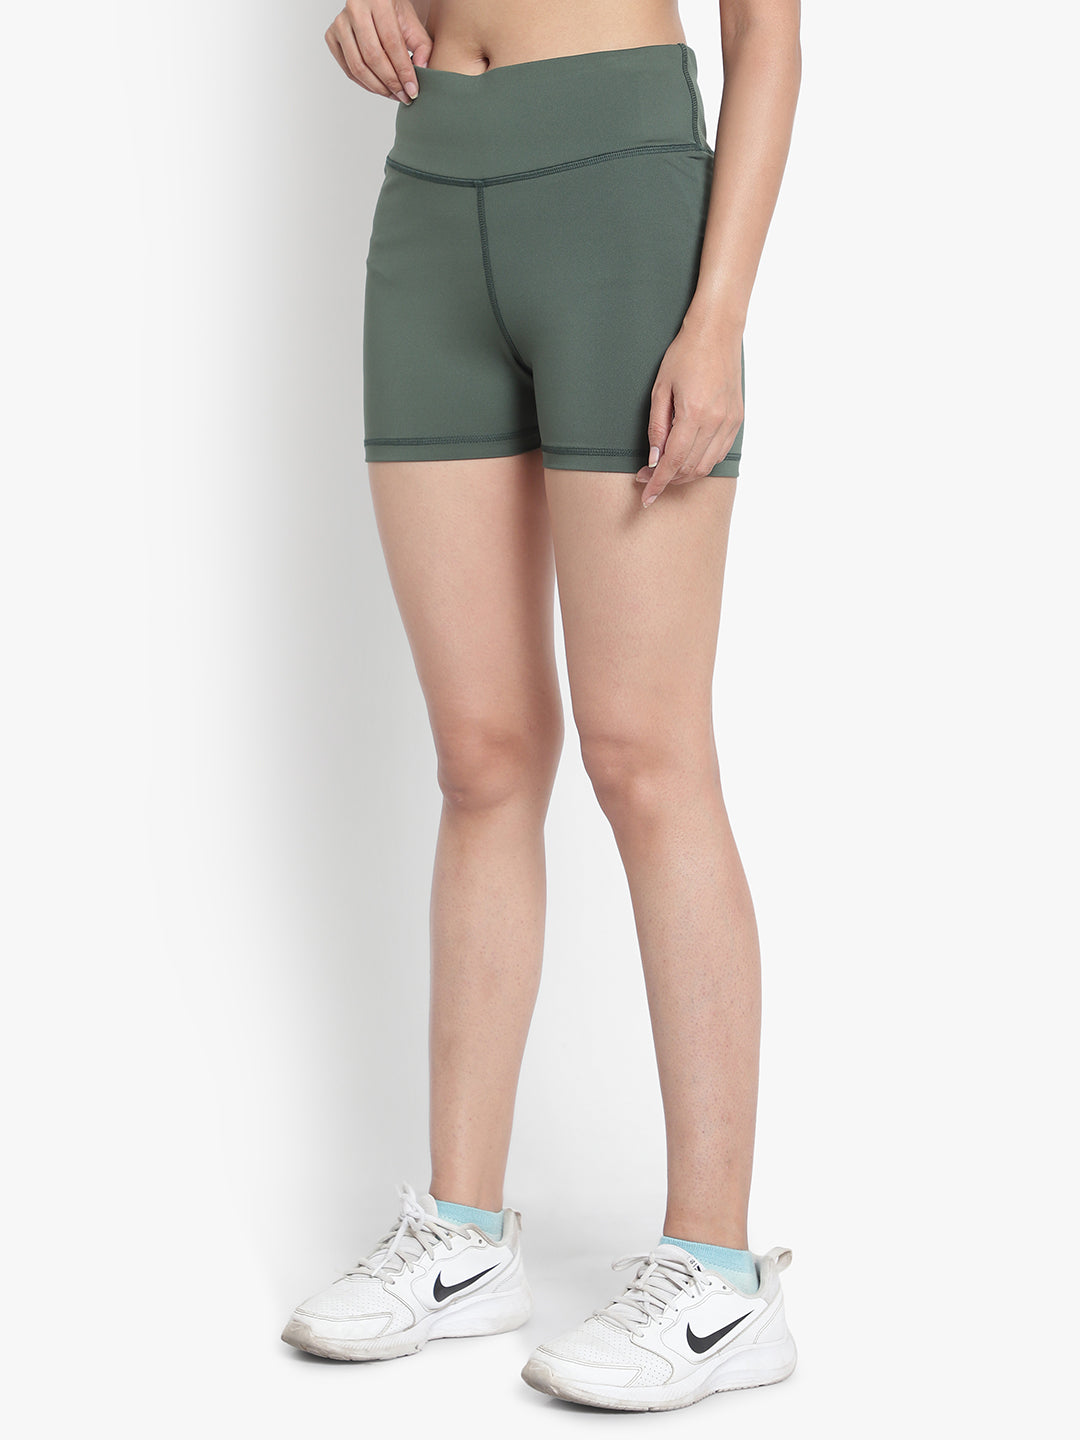 Aero Hottie Hot Shorts - Green